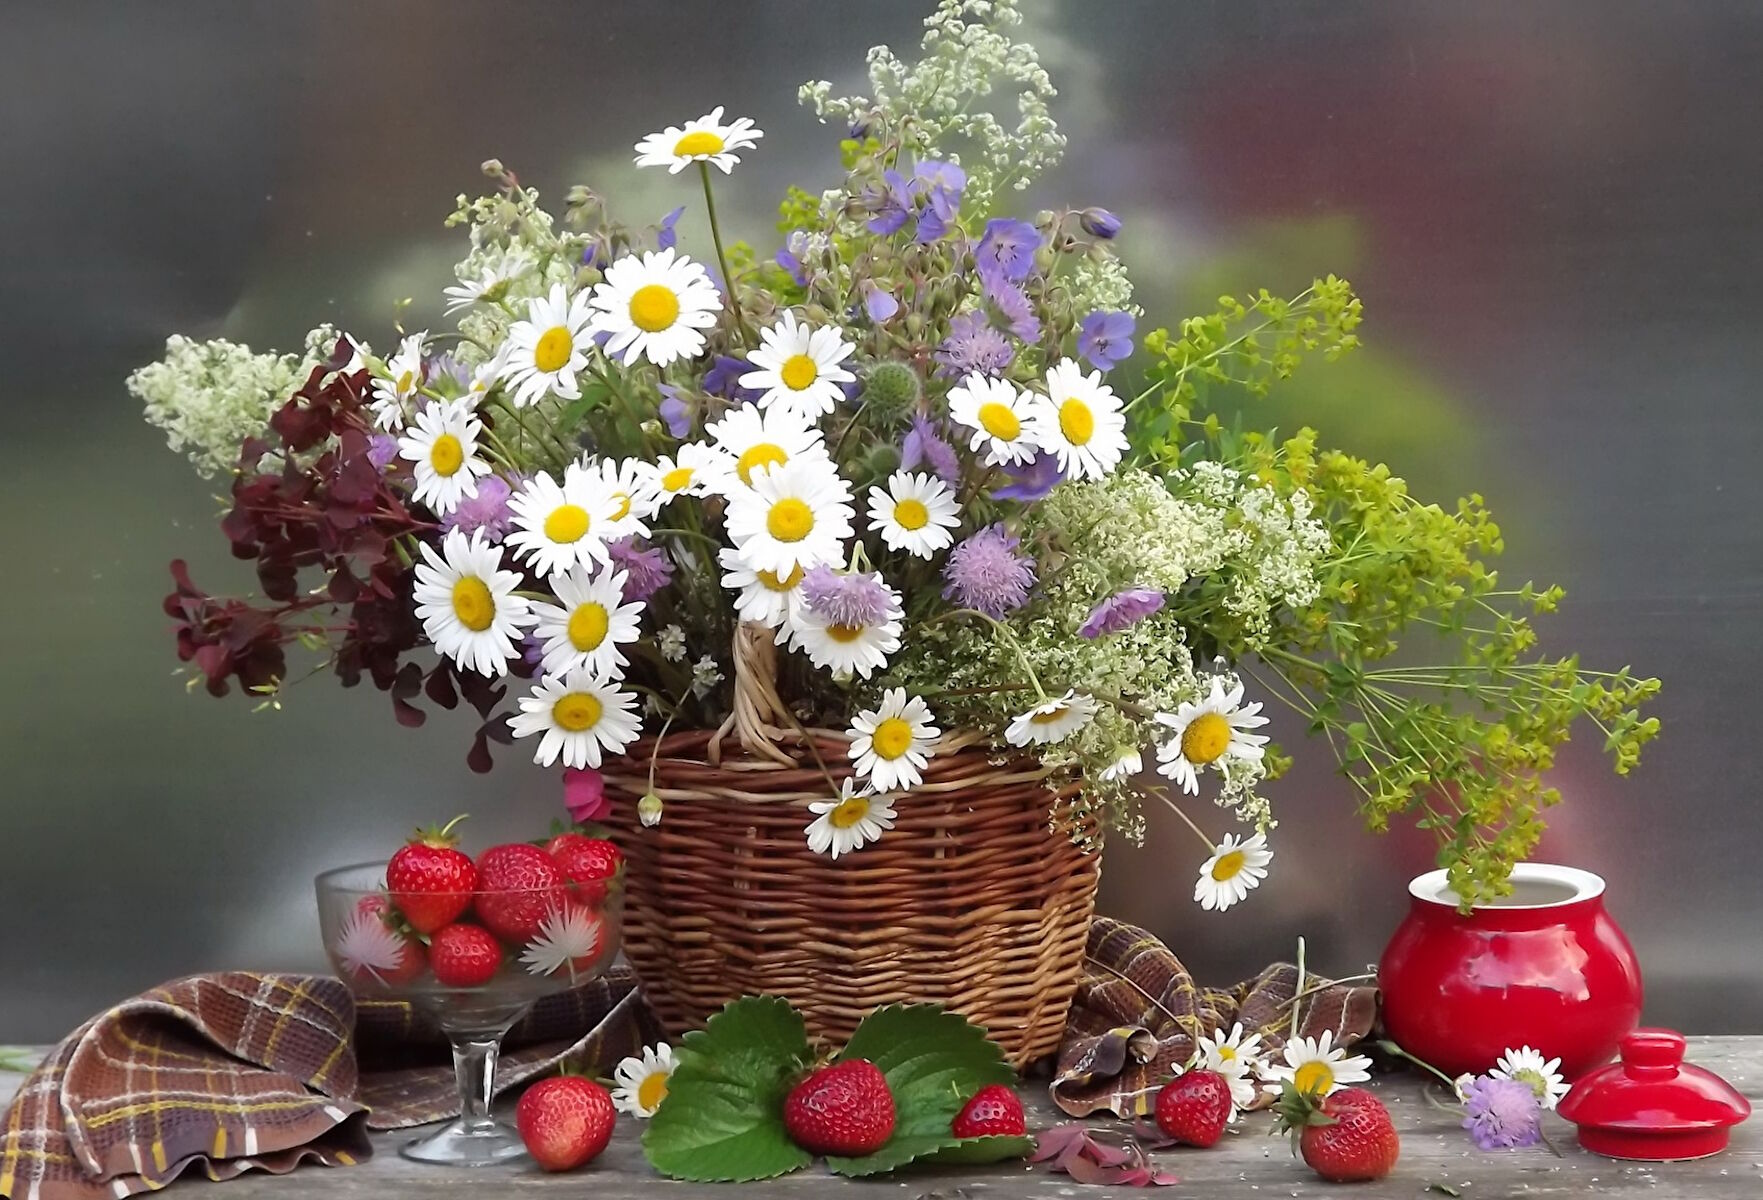 Хорошего дня последние дни лета. Букет полевых цветов. Красивый летний букет. Красивый букет полевых цветов. Полевые цветы в корзинке.